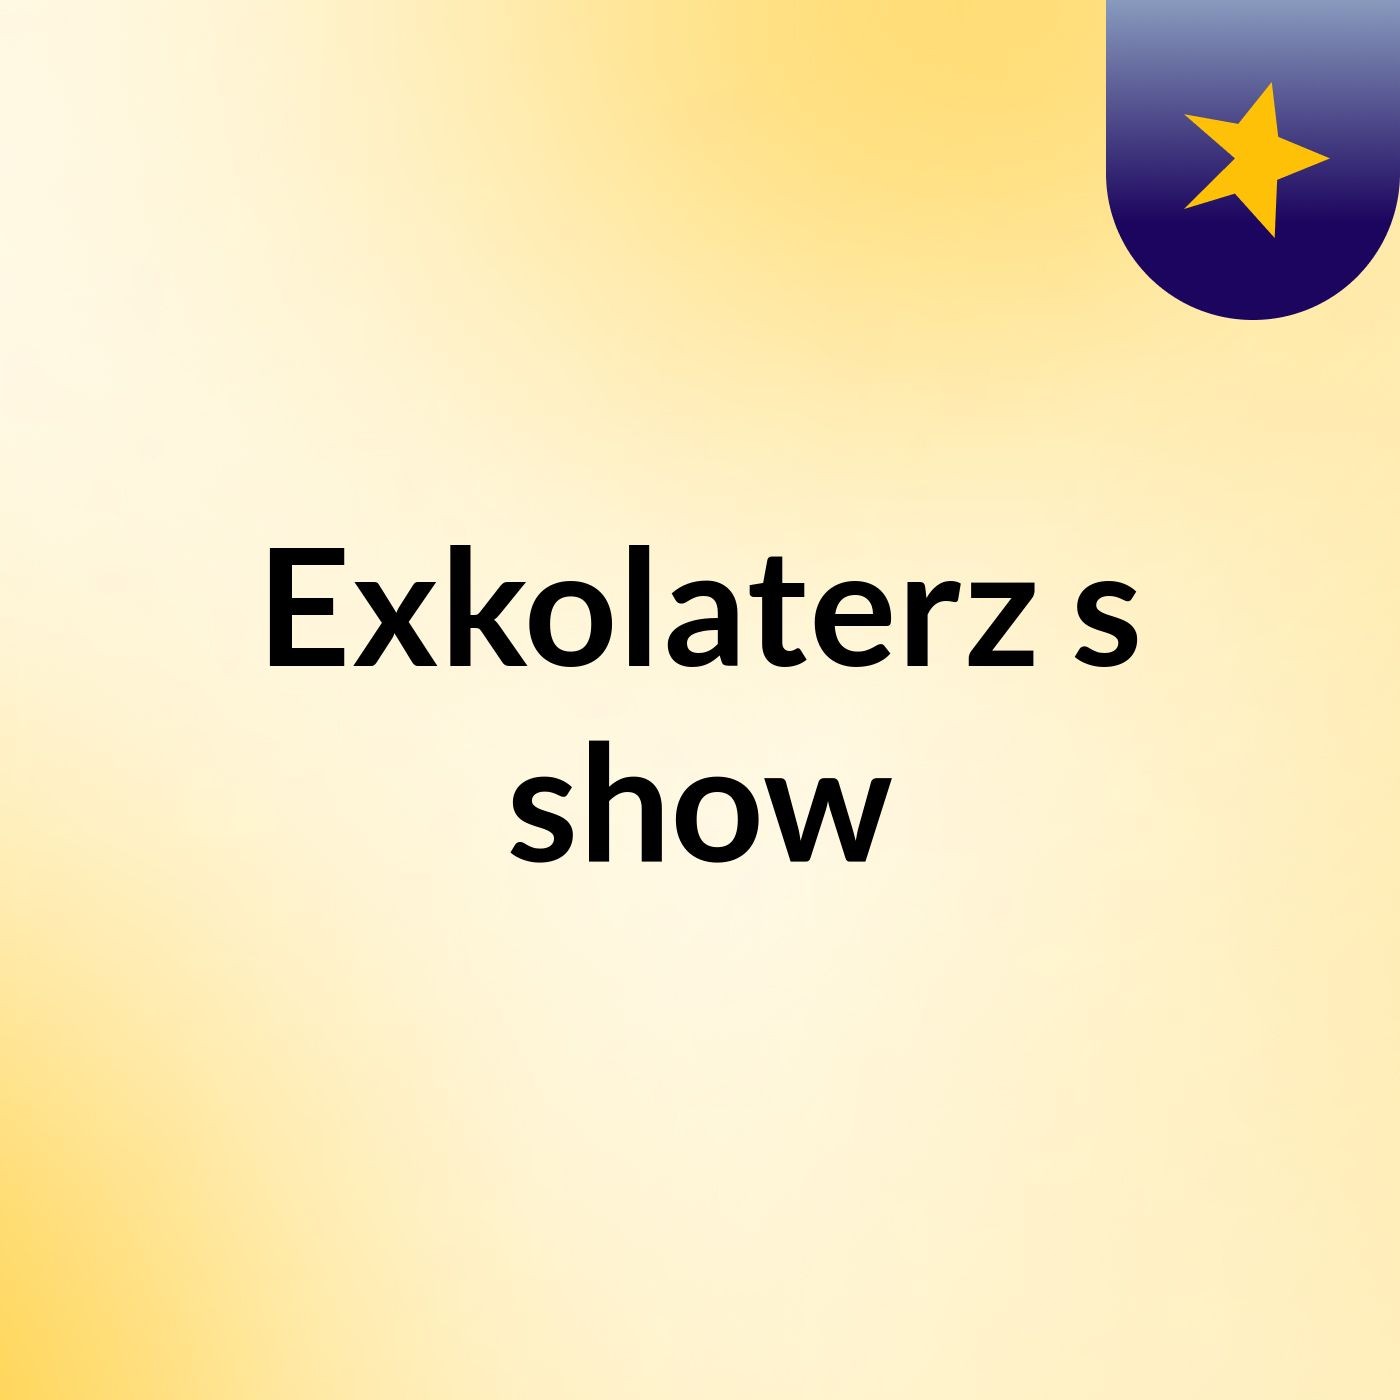 Exkolaterz's show